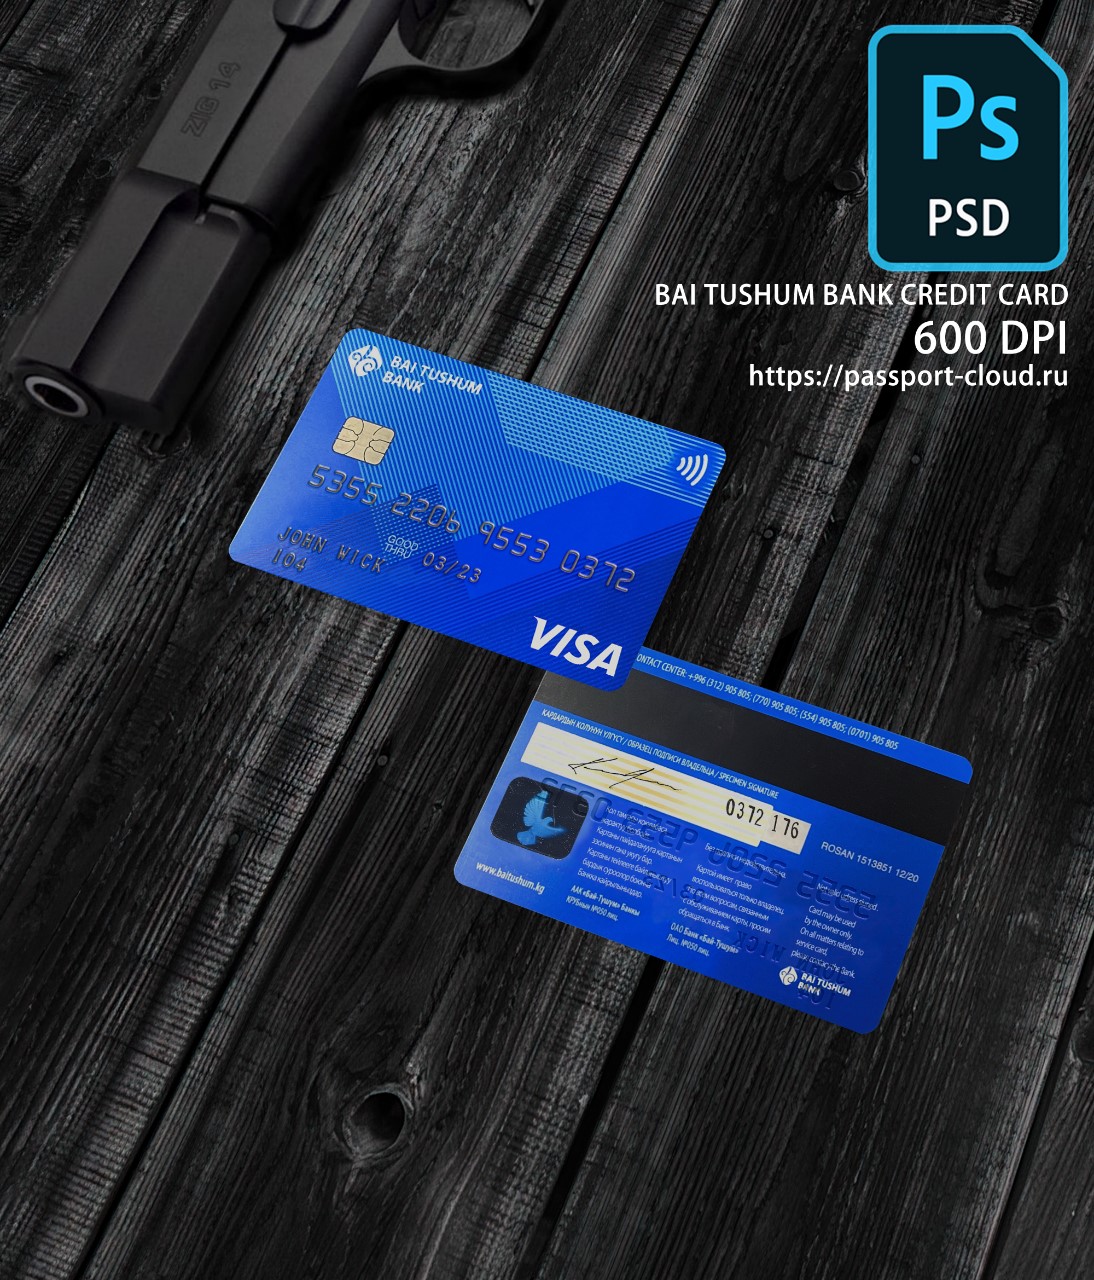 Bai Tushum Bank Credit Card PSD-0